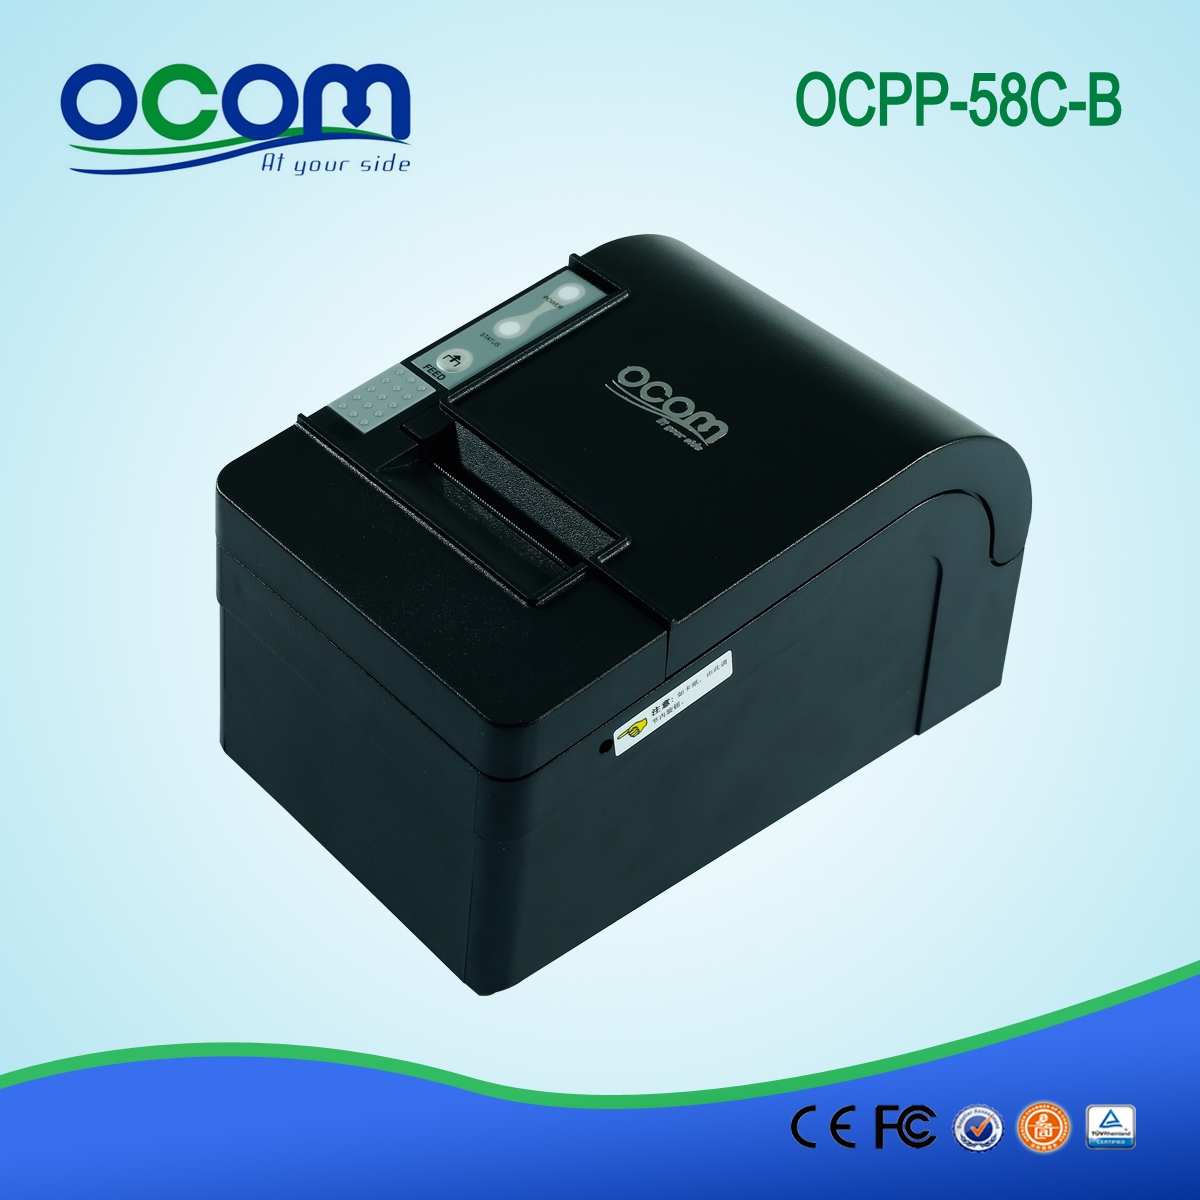 Έγχρωμος εκτυπωτής παραλαβής 58 χιλιοστών με αυτόματο κόπτη OCPP-58C-L LAN / Ethernet θύρα